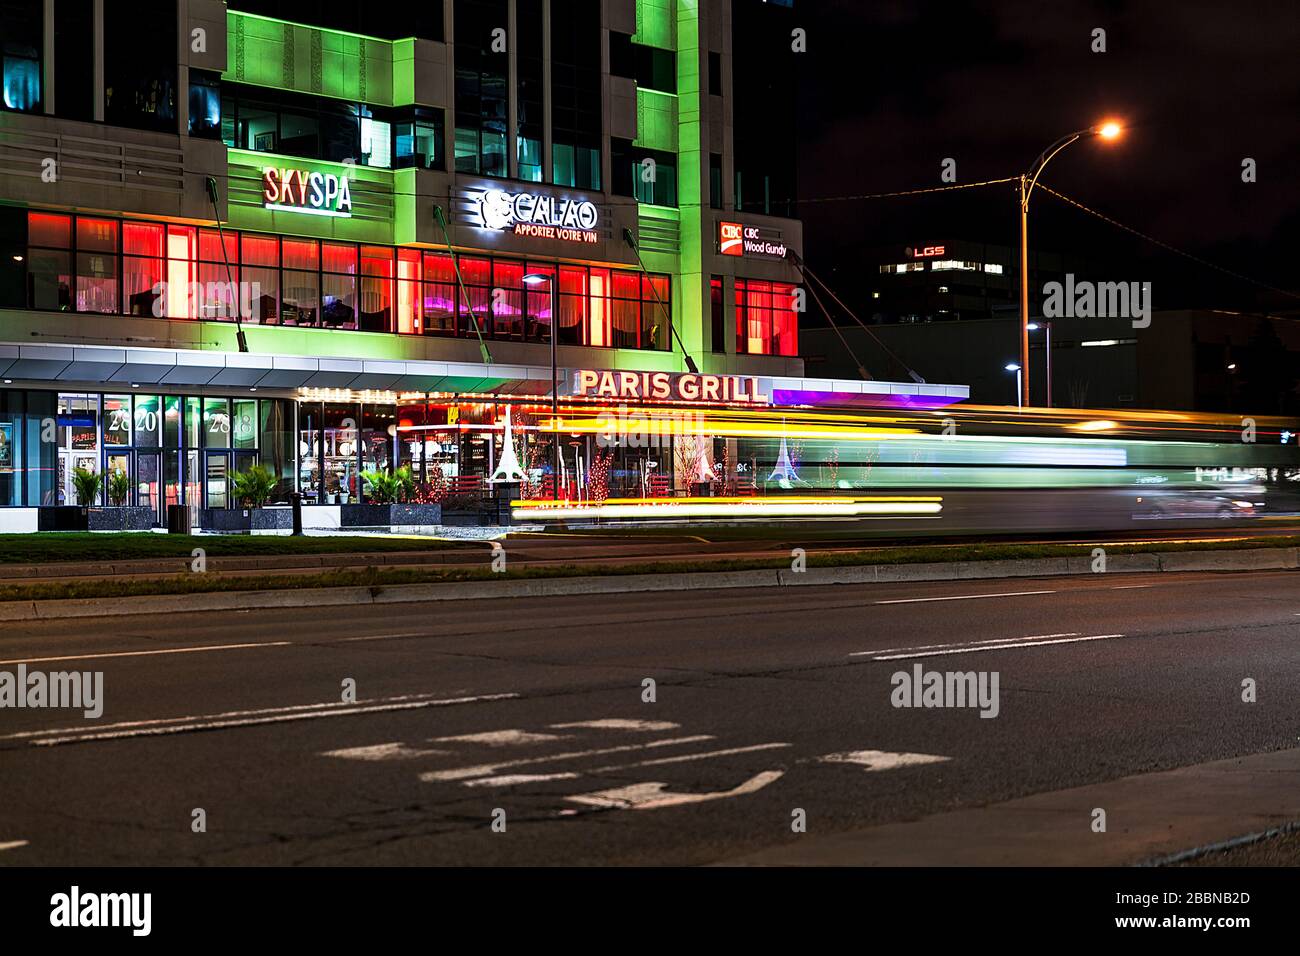 Nachtlicht - Paris Grill, BCB, CALAO, SkySpa - lange Belichtung Stockfoto